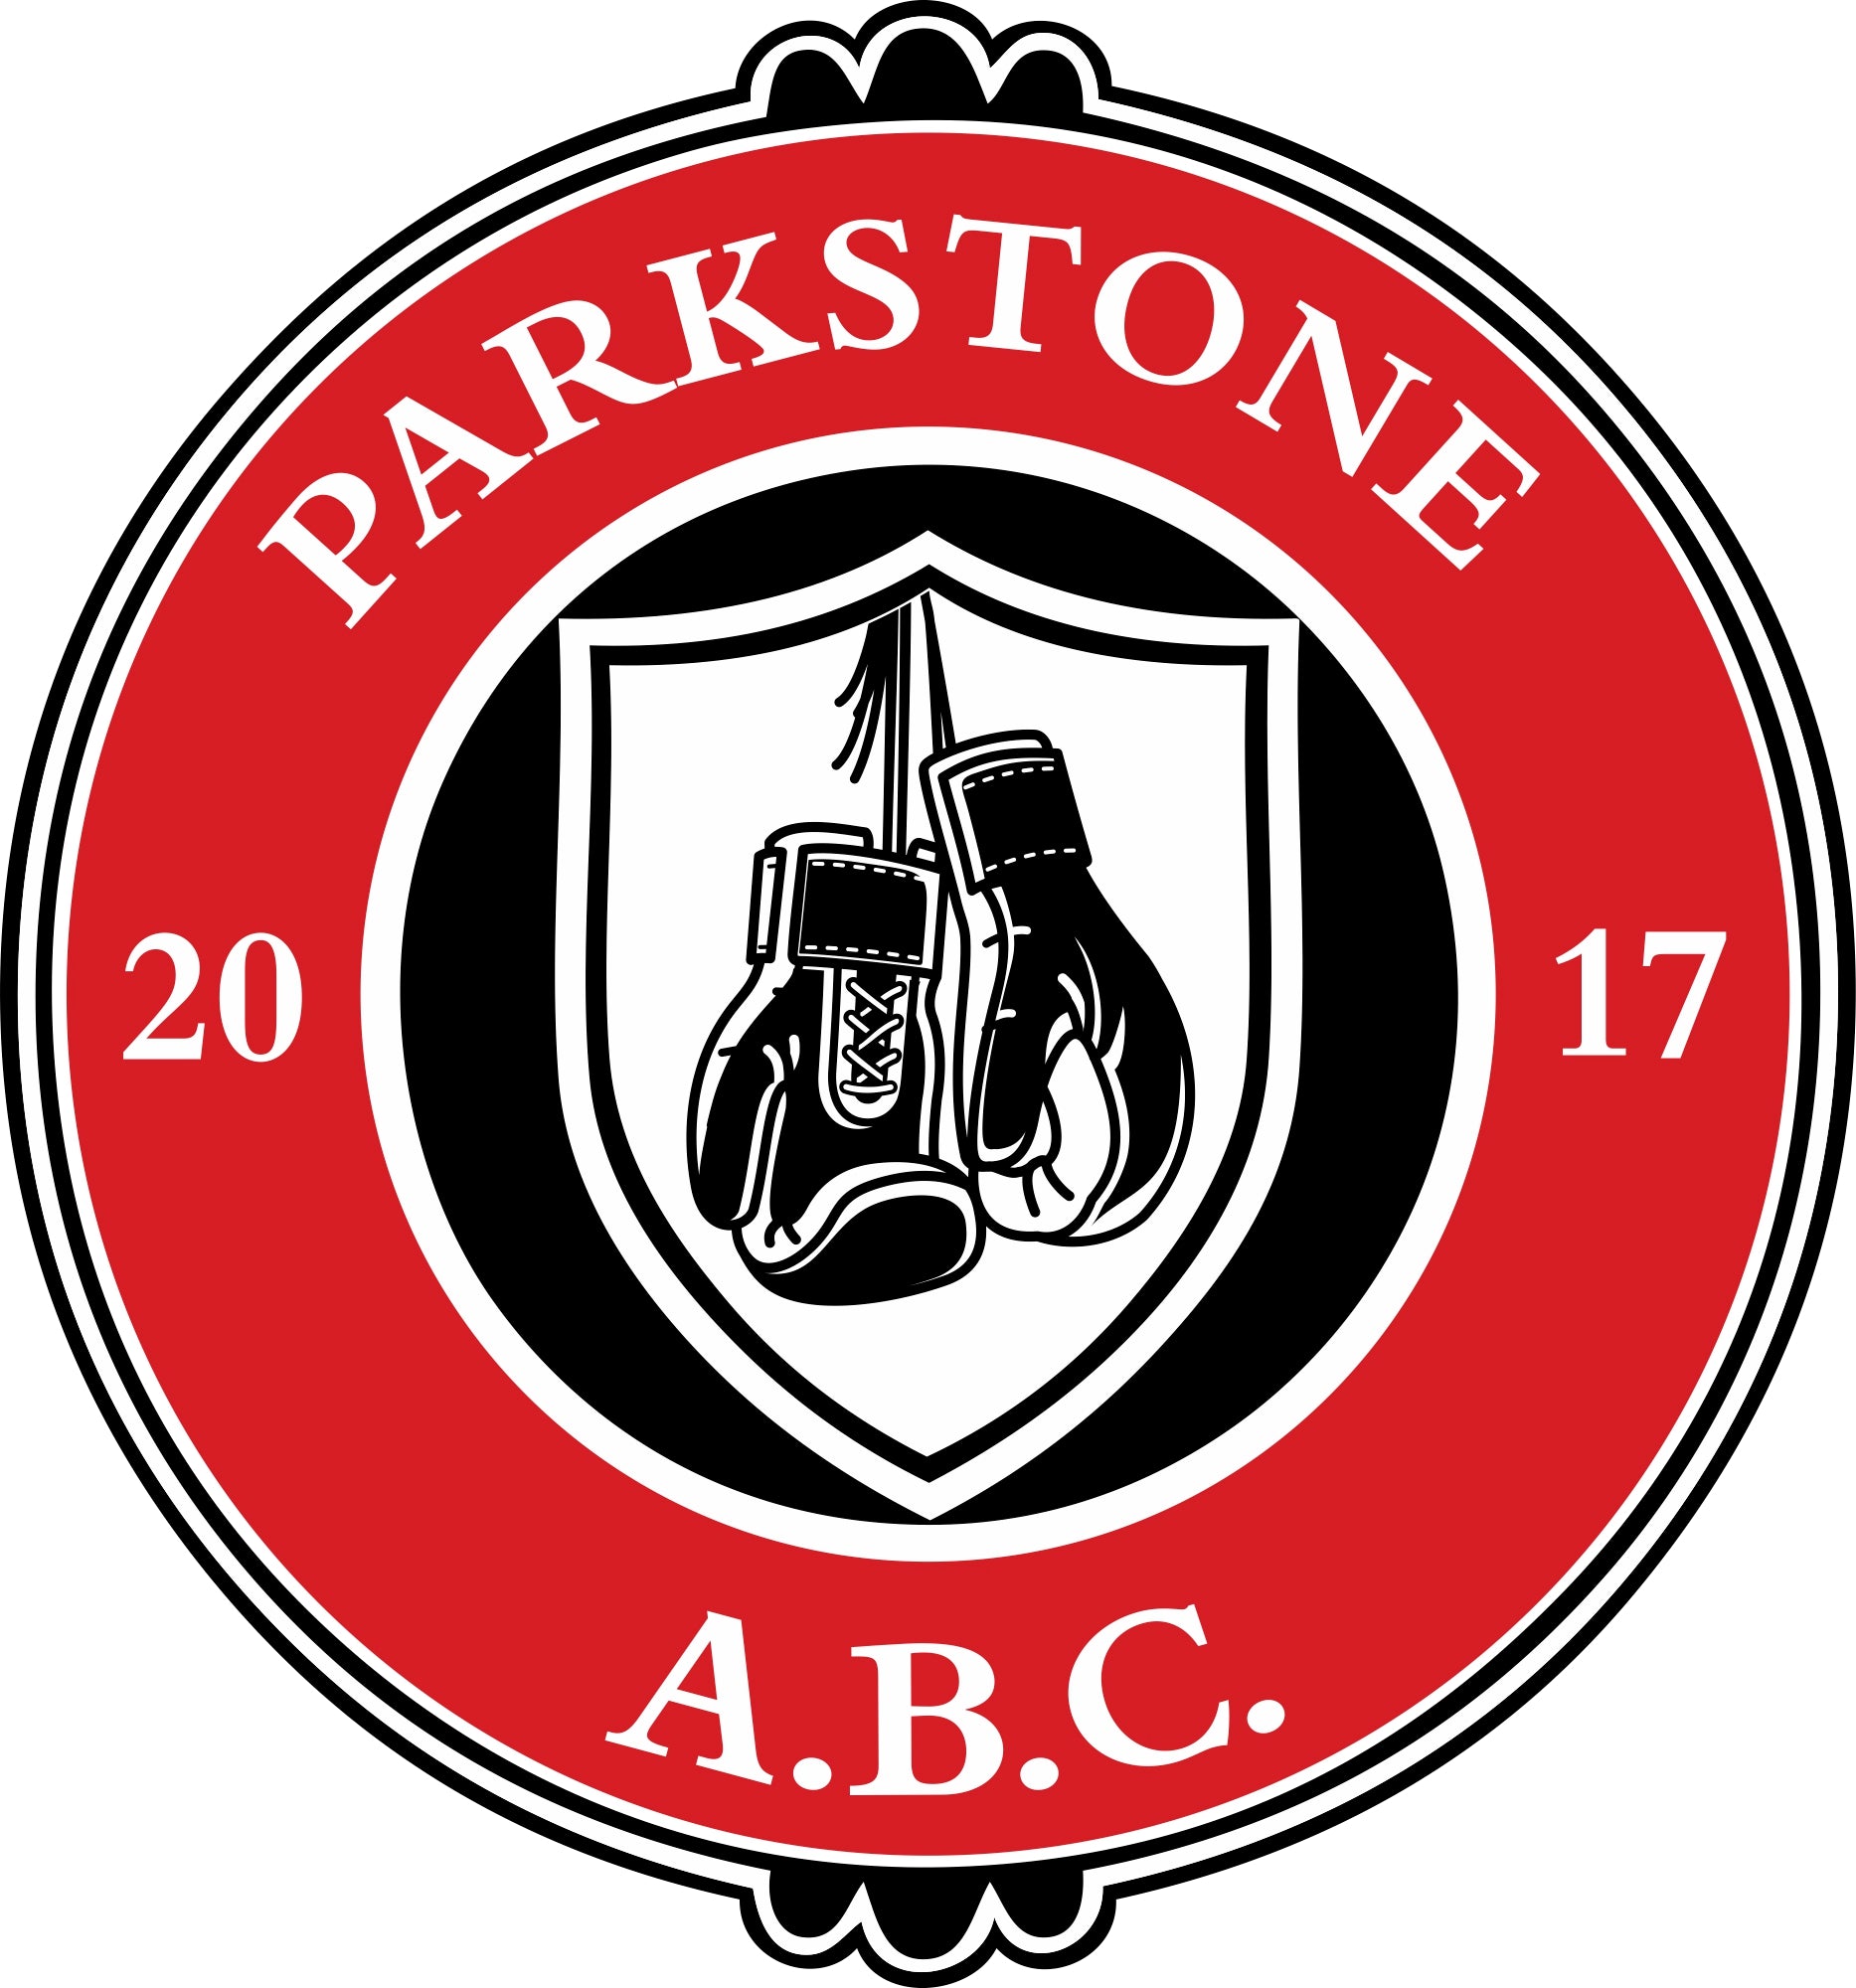 Parkstone ABC